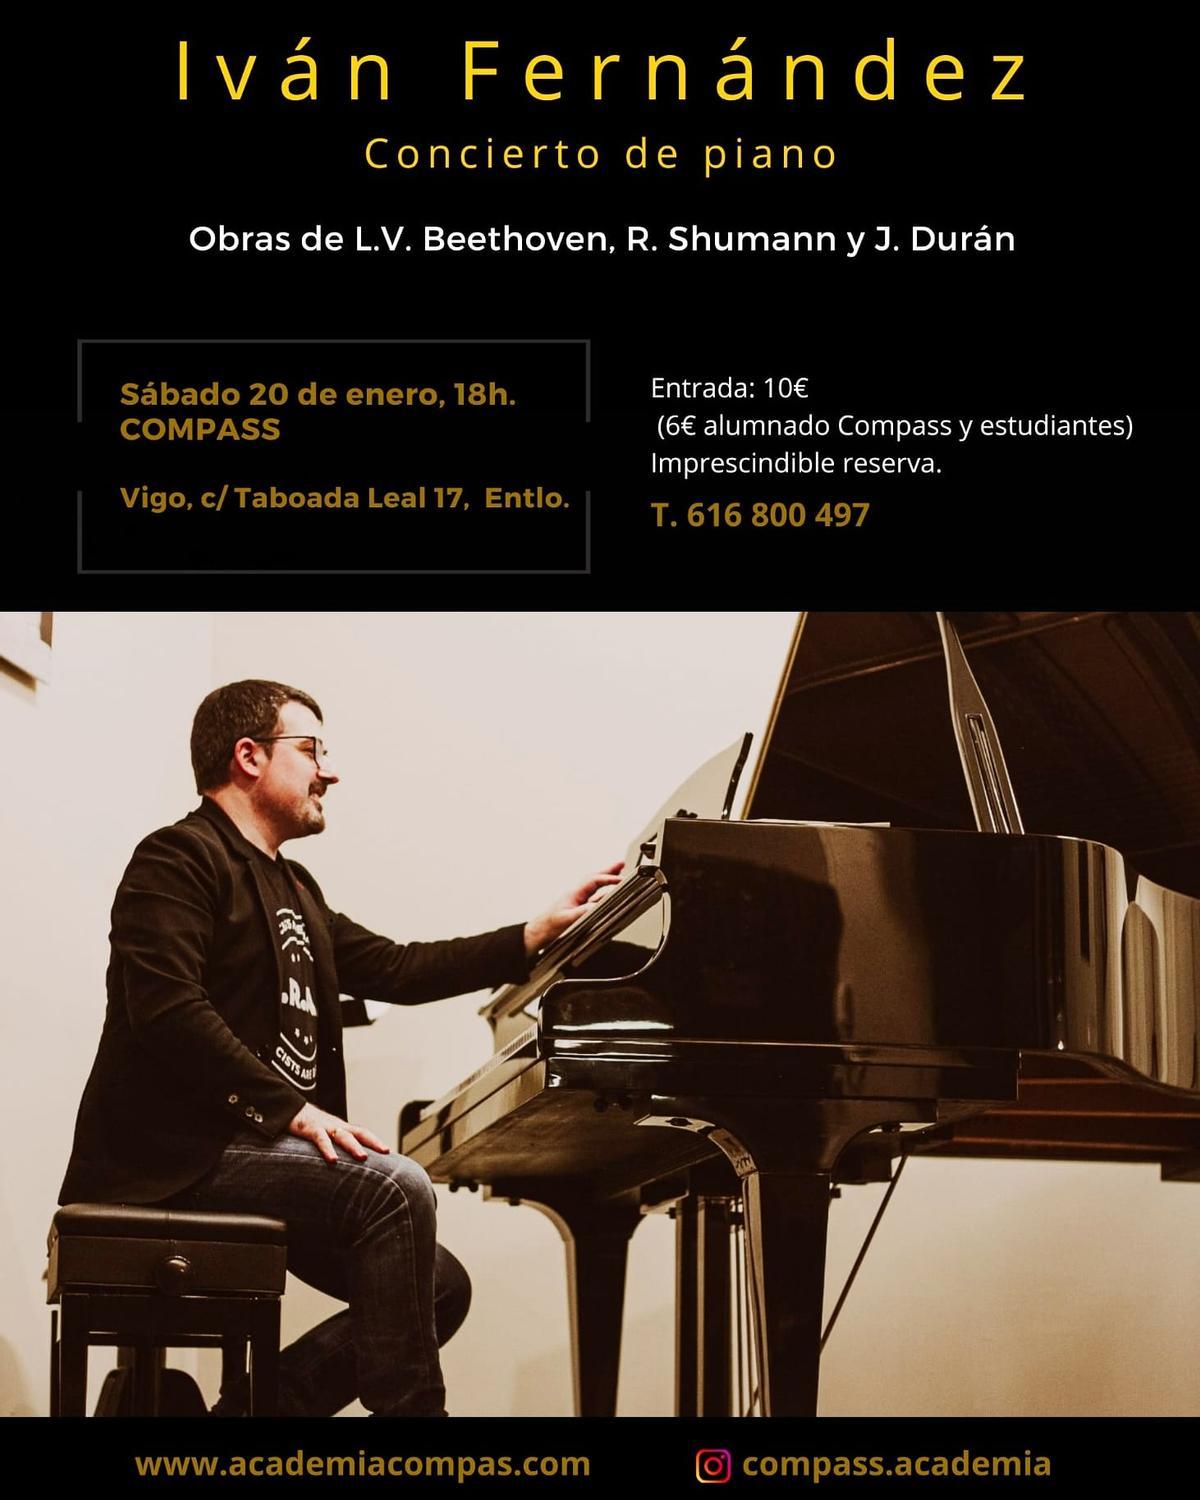 El pianista Iván Fernández ofrece un concierto esta tarde en Compass.